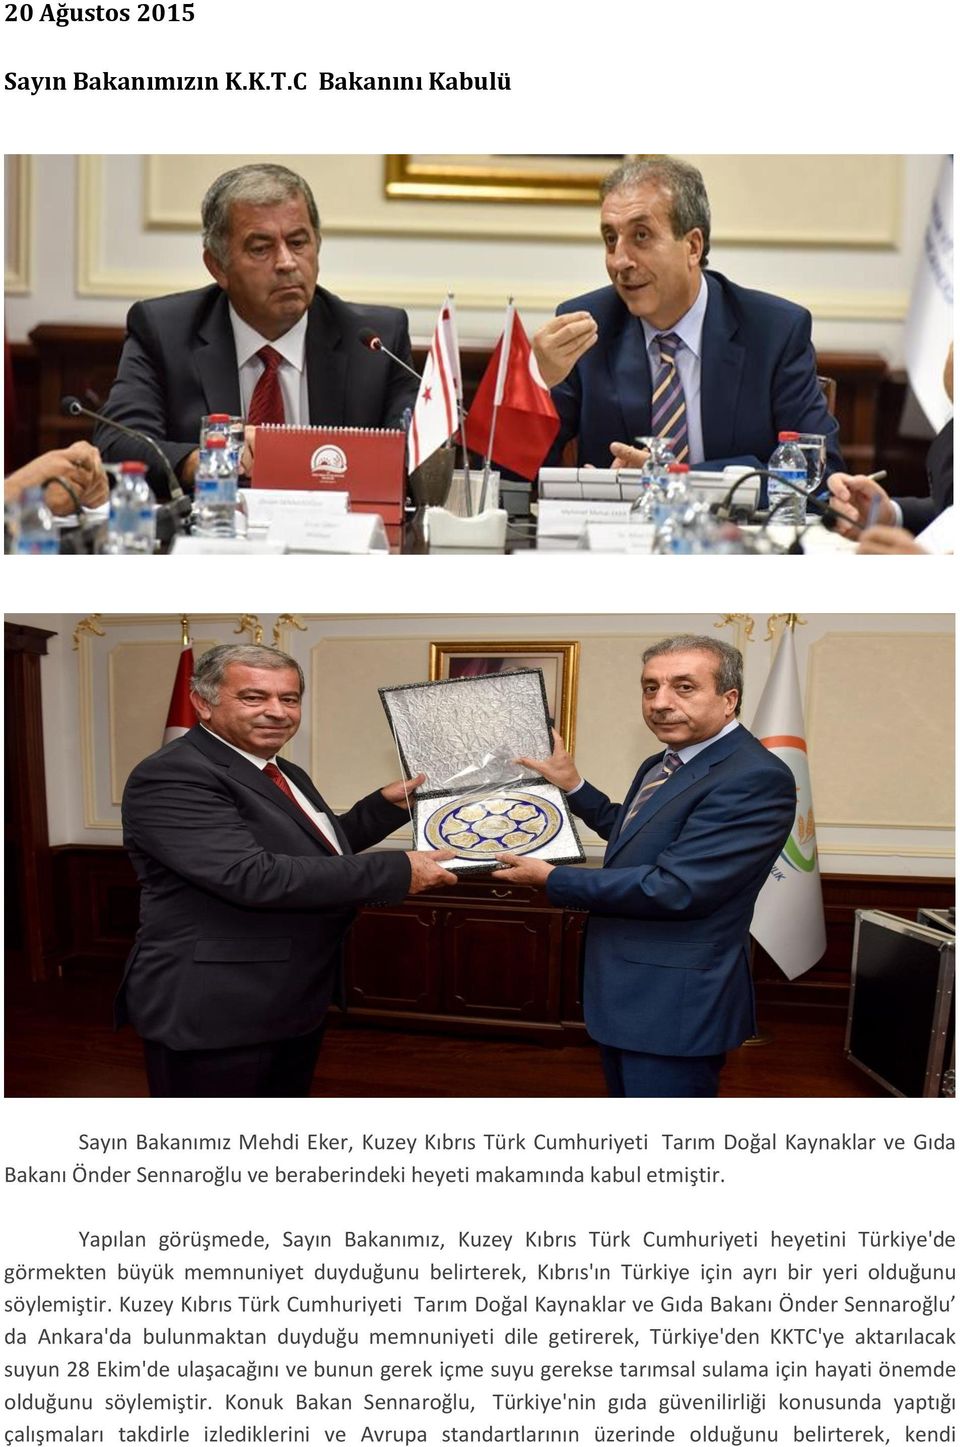 Yapılan görüşmede, Sayın Bakanımız, Kuzey Kıbrıs Türk Cumhuriyeti heyetini Türkiye'de görmekten büyük memnuniyet duyduğunu belirterek, Kıbrıs'ın Türkiye için ayrı bir yeri olduğunu söylemiştir.